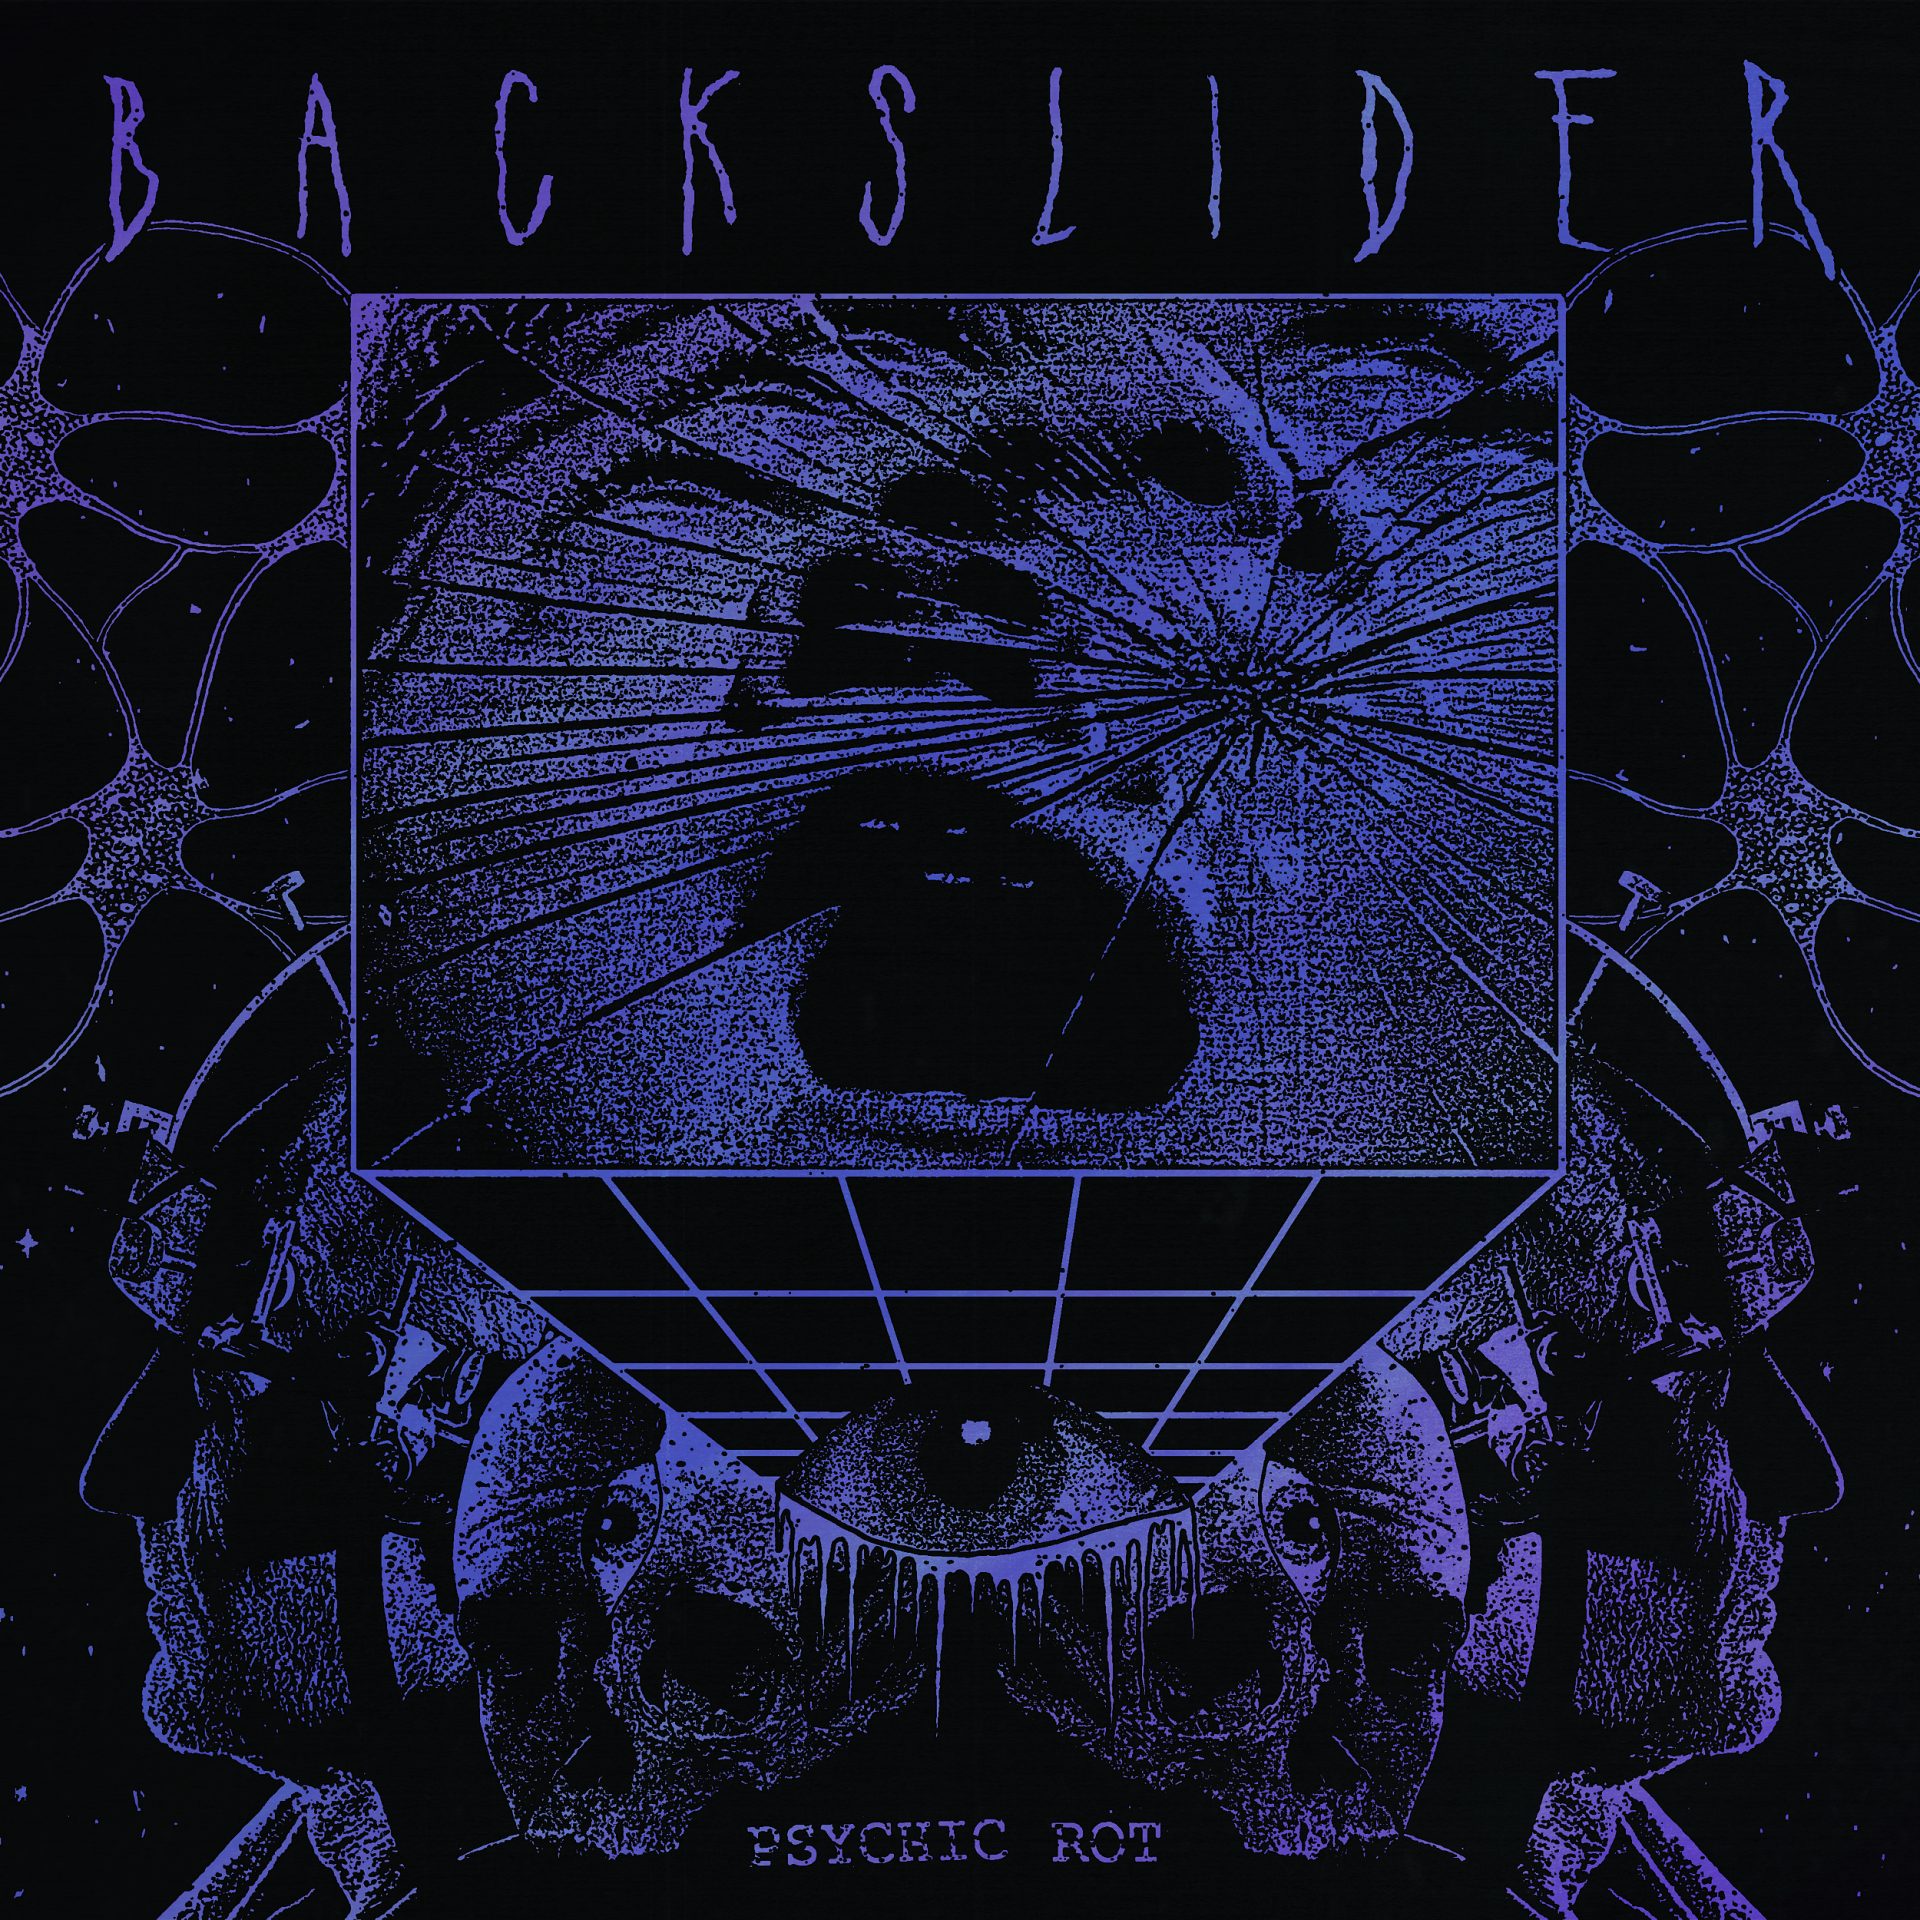 Backslider - Psychic Rot